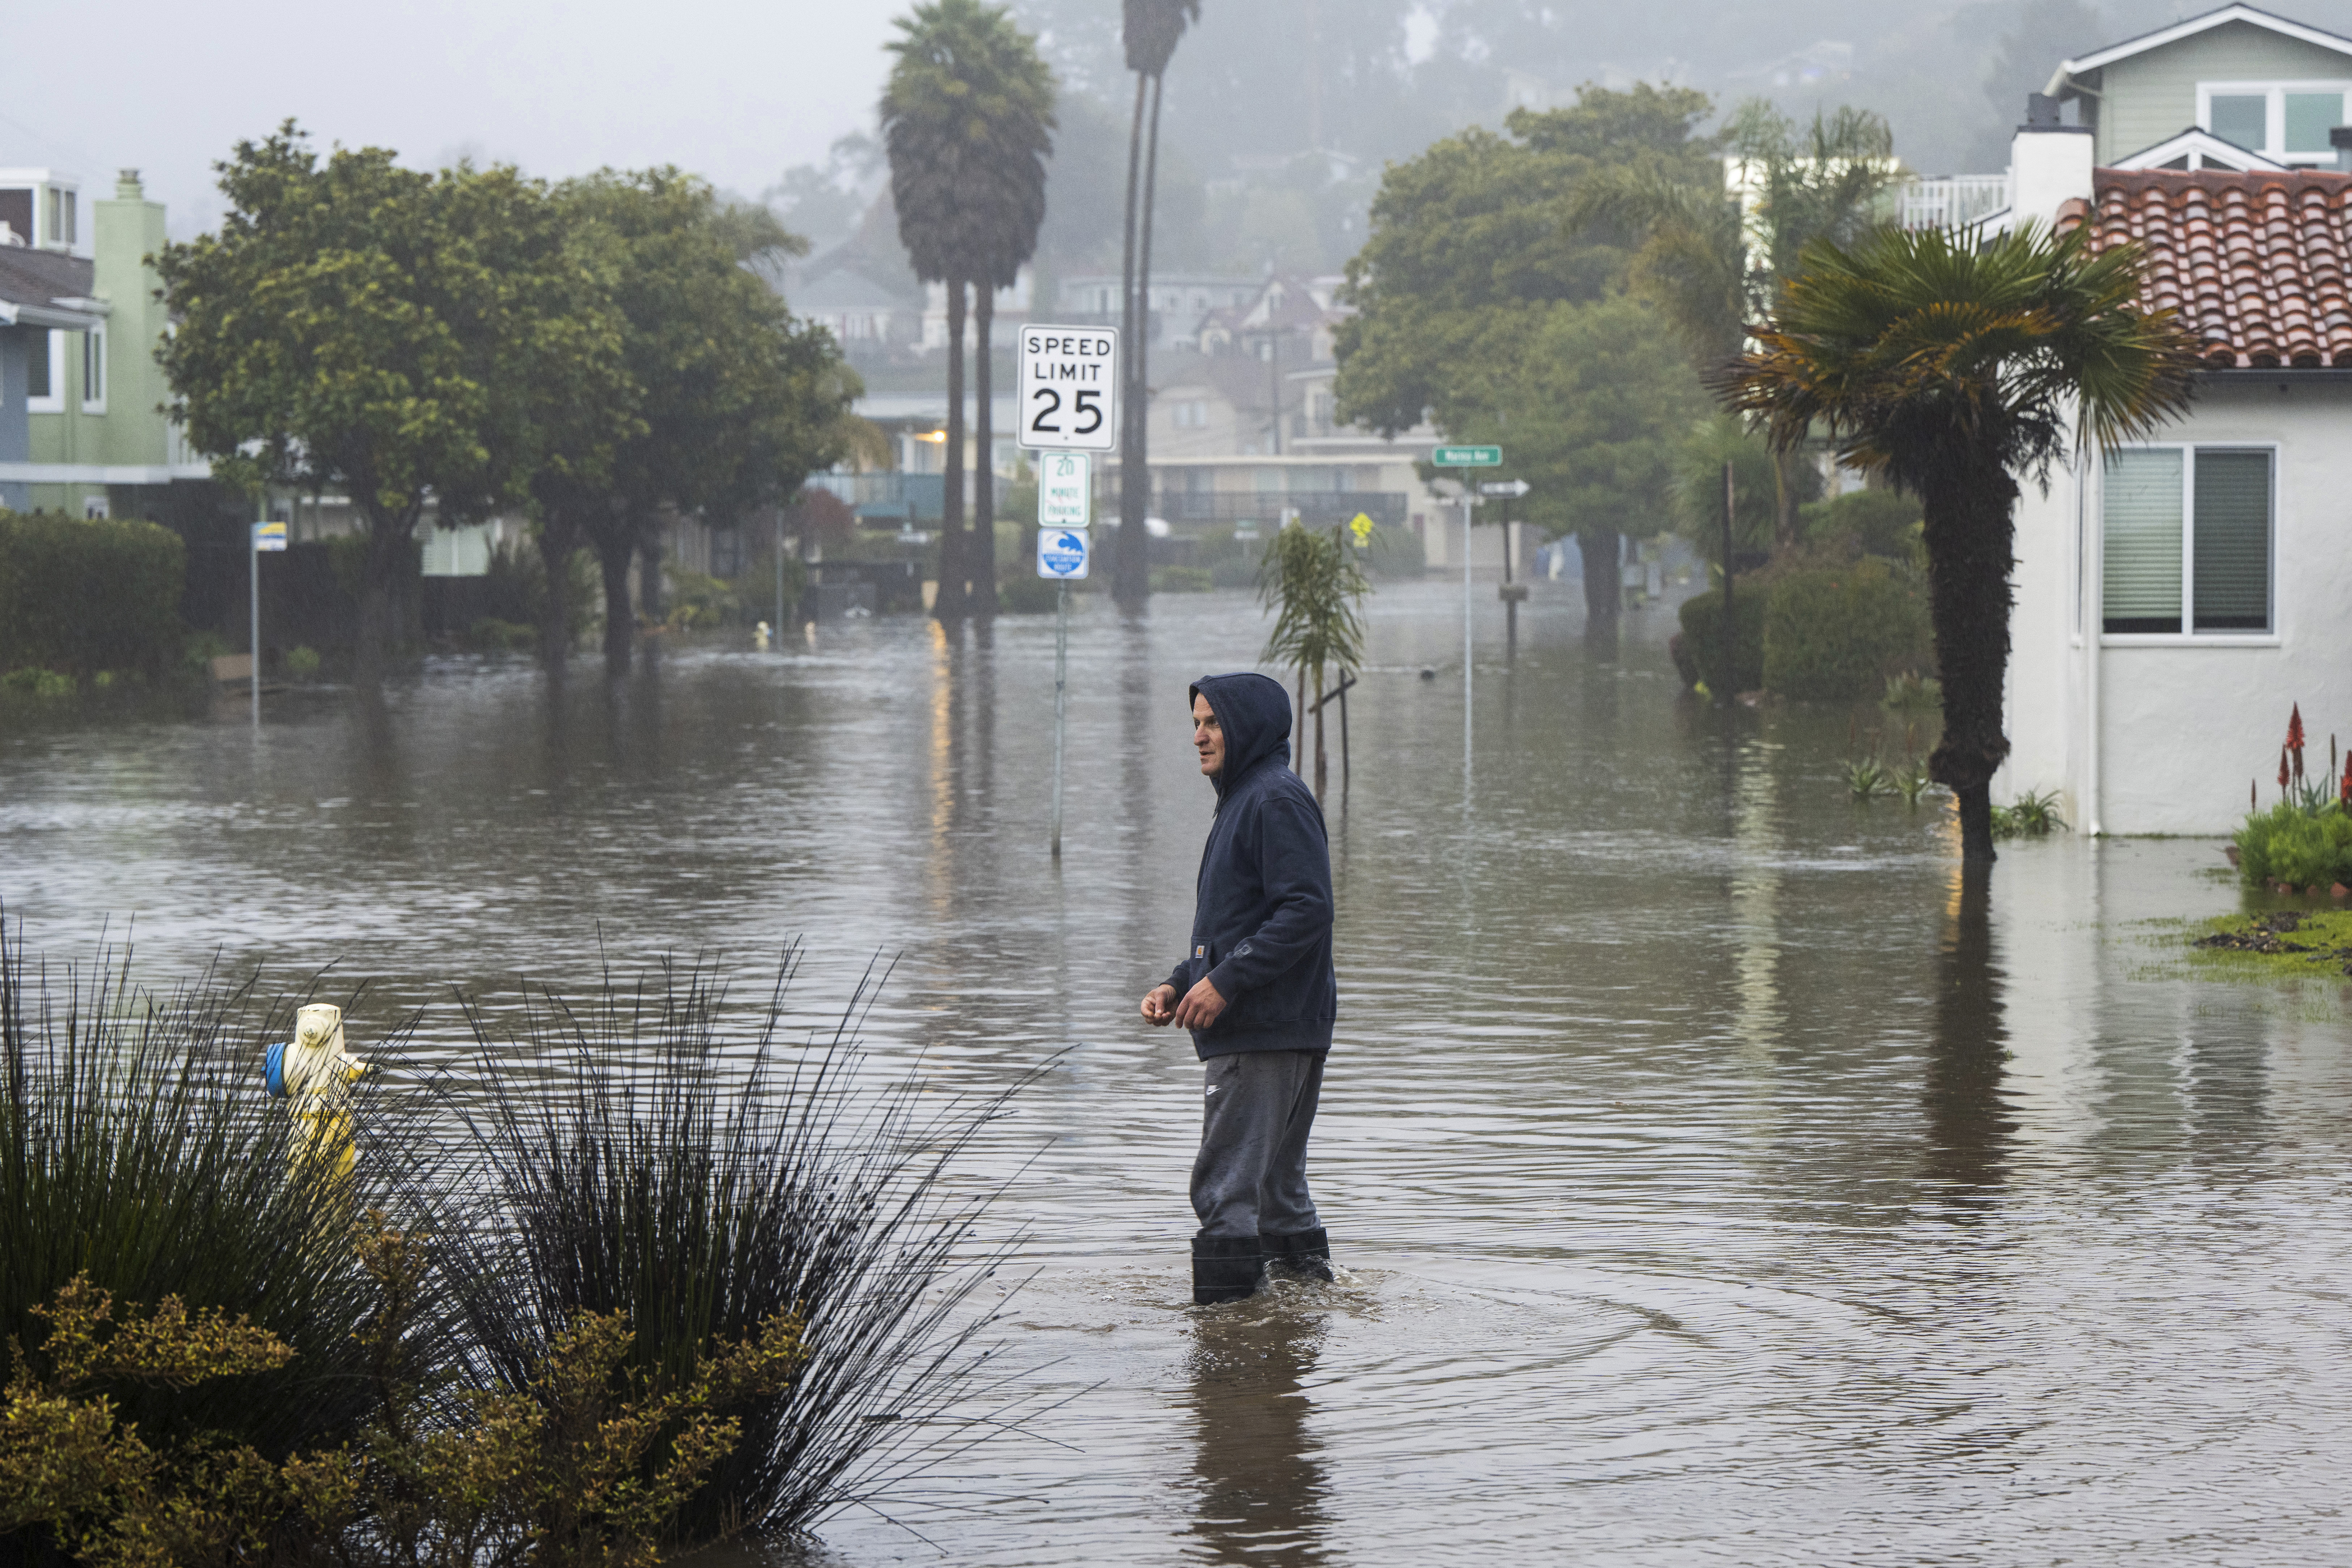 Inundación en California obliga a evacuaciones masivas, niño arrastrado